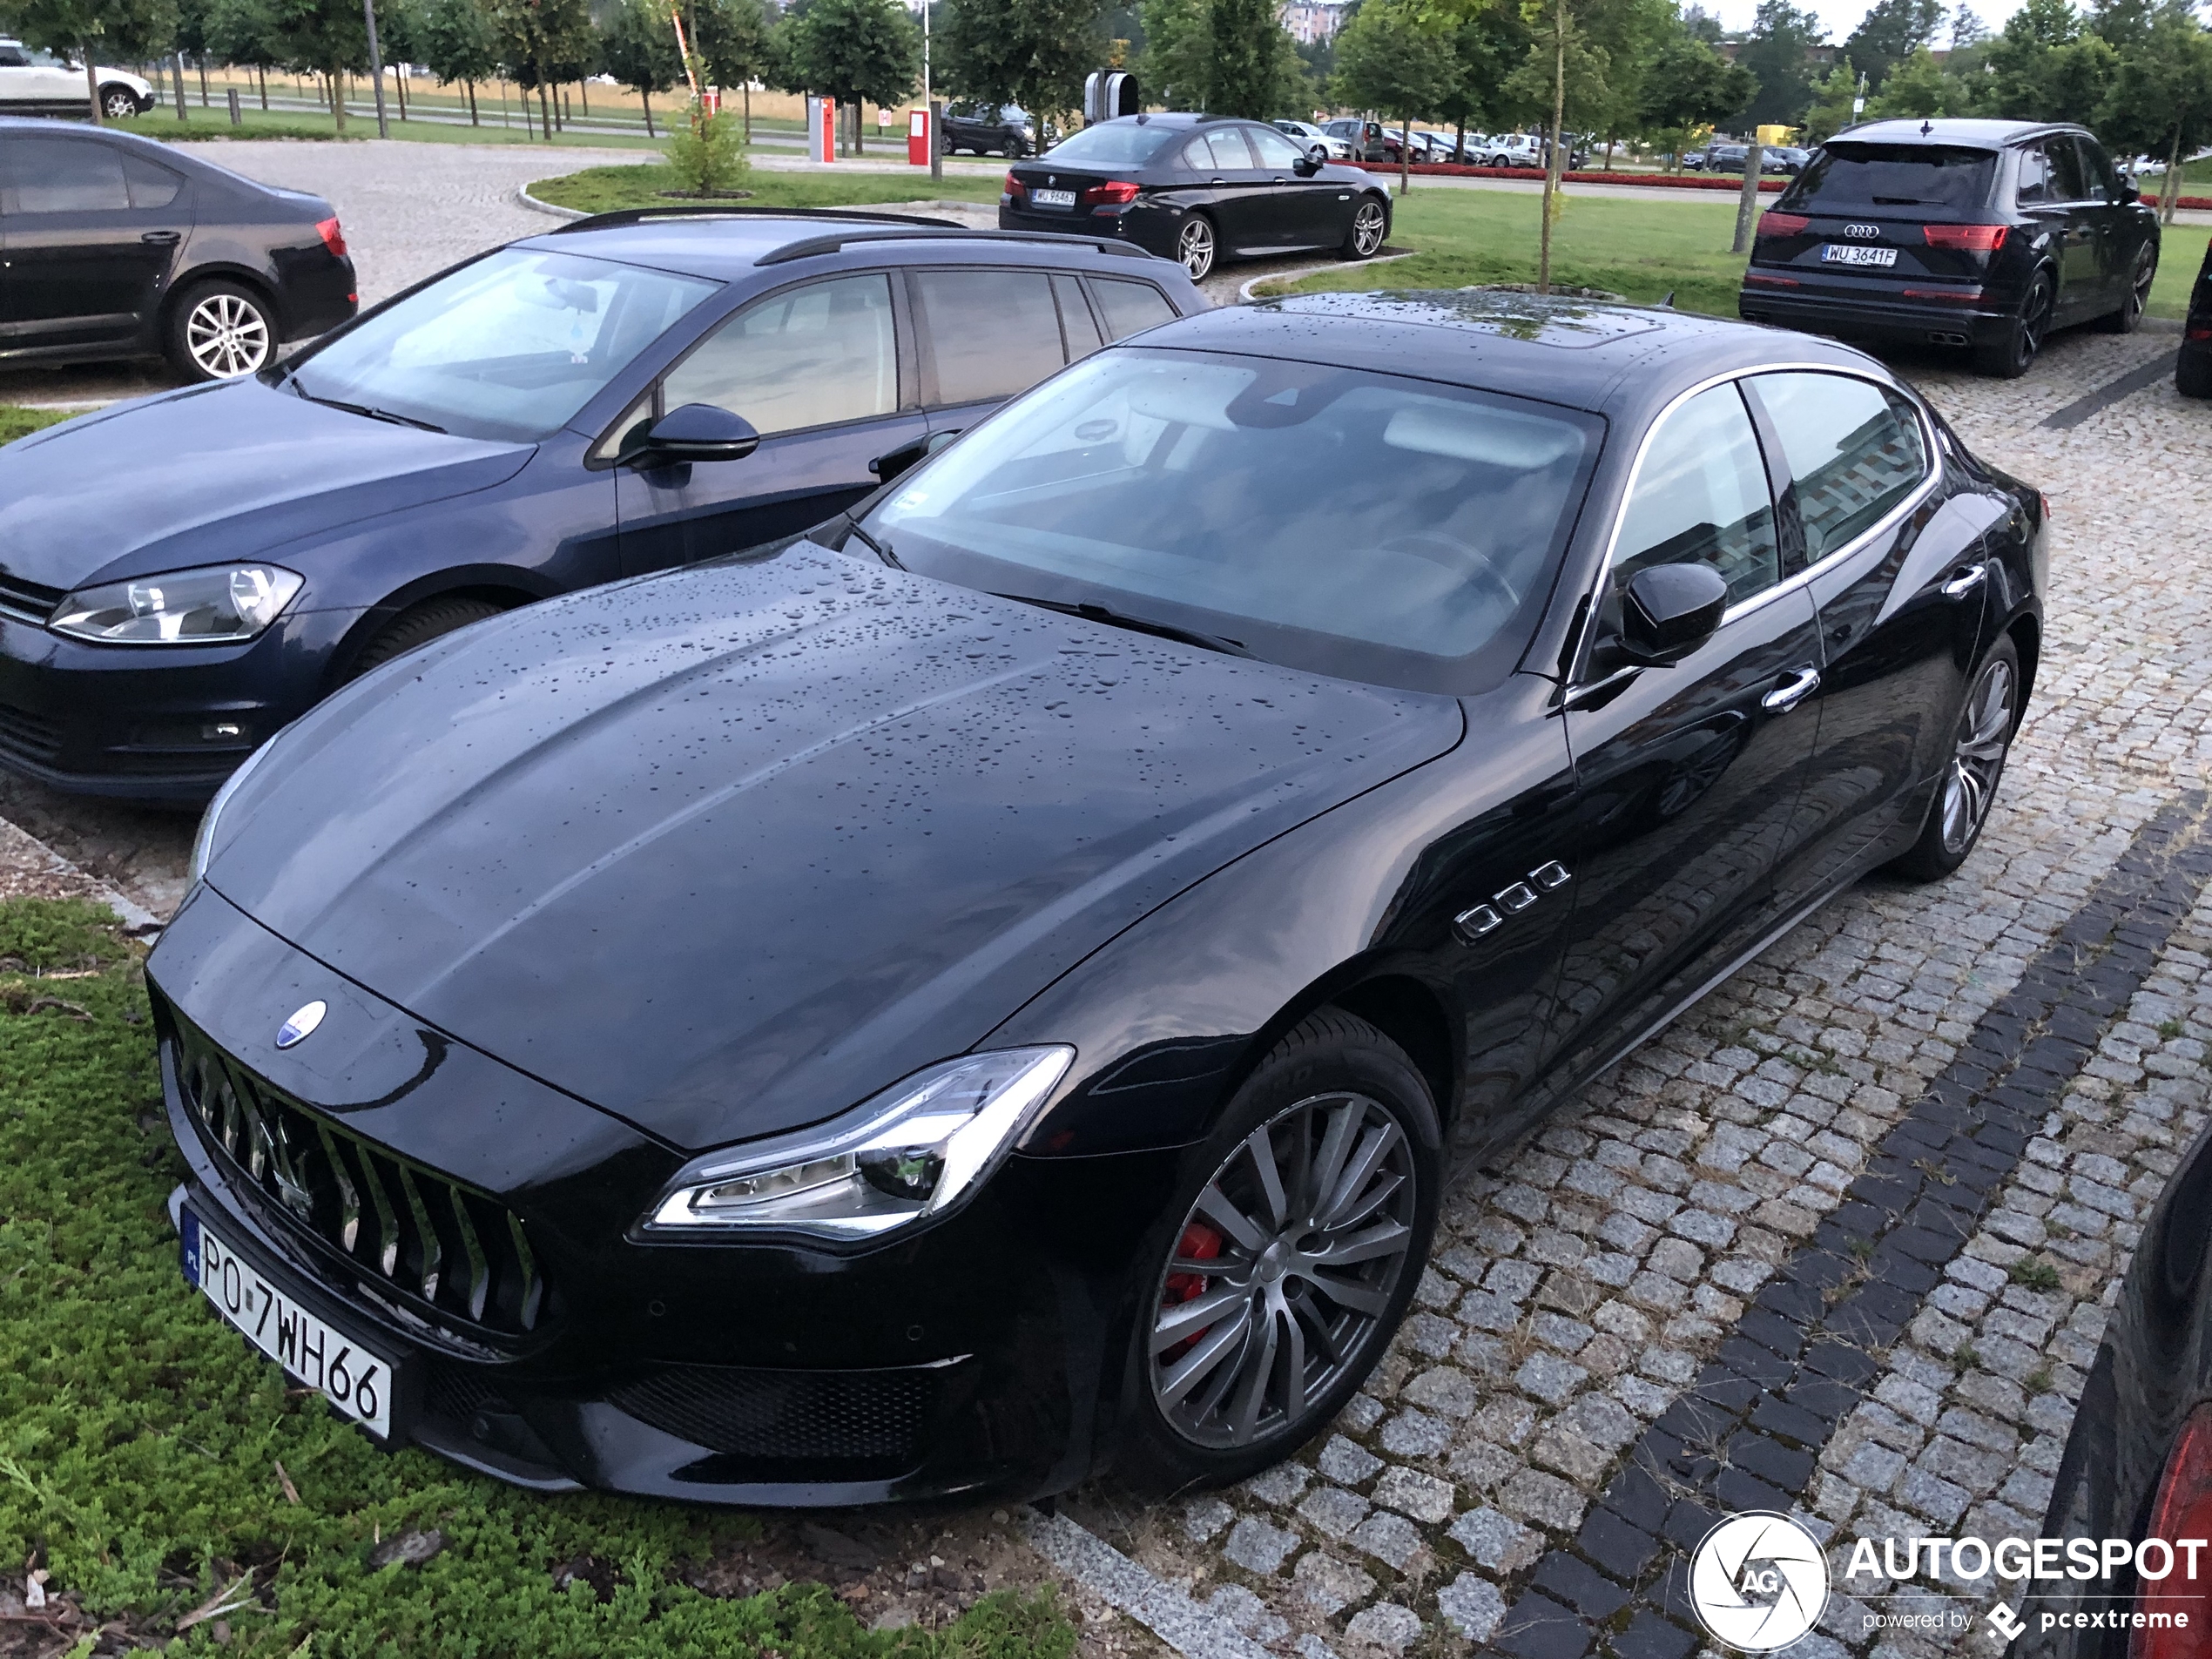 Maserati Quattroporte S GranSport 2018